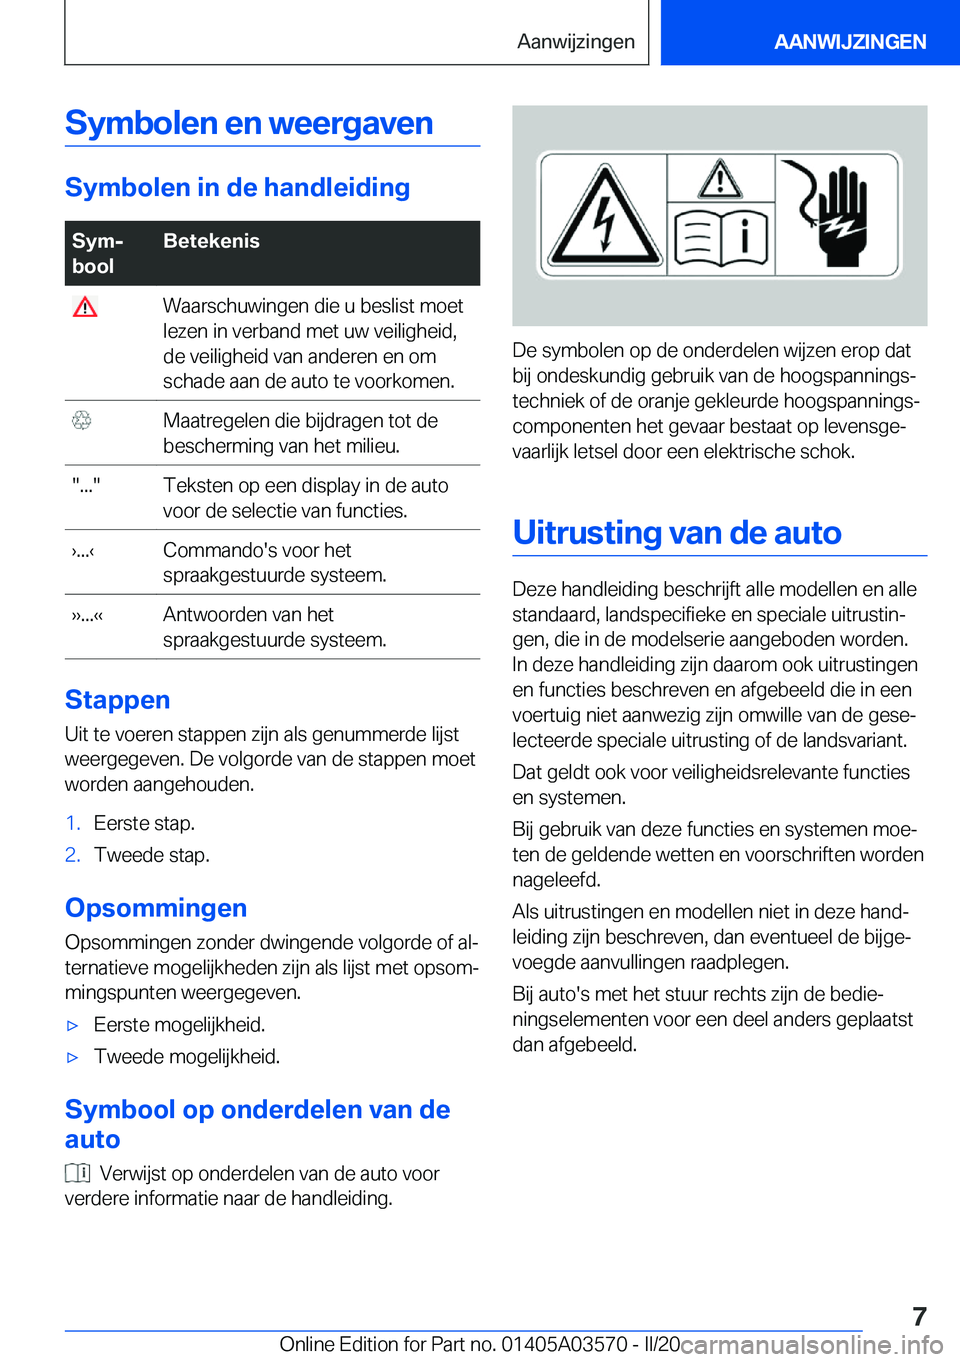 BMW X3 PLUG IN HYBRID 2020  Instructieboekjes (in Dutch) �S�y�m�b�o�l�e�n��e�n��w�e�e�r�g�a�v�e�n
�S�y�m�b�o�l�e�n��i�n��d�e��h�a�n�d�l�e�i�d�i�n�g
�S�y�mj
�b�o�o�l�B�e�t�e�k�e�n�i�s��W�a�a�r�s�c�h�u�w�i�n�g�e�n��d�i�e��u��b�e�s�l�i�s�t��m�o�e�t
